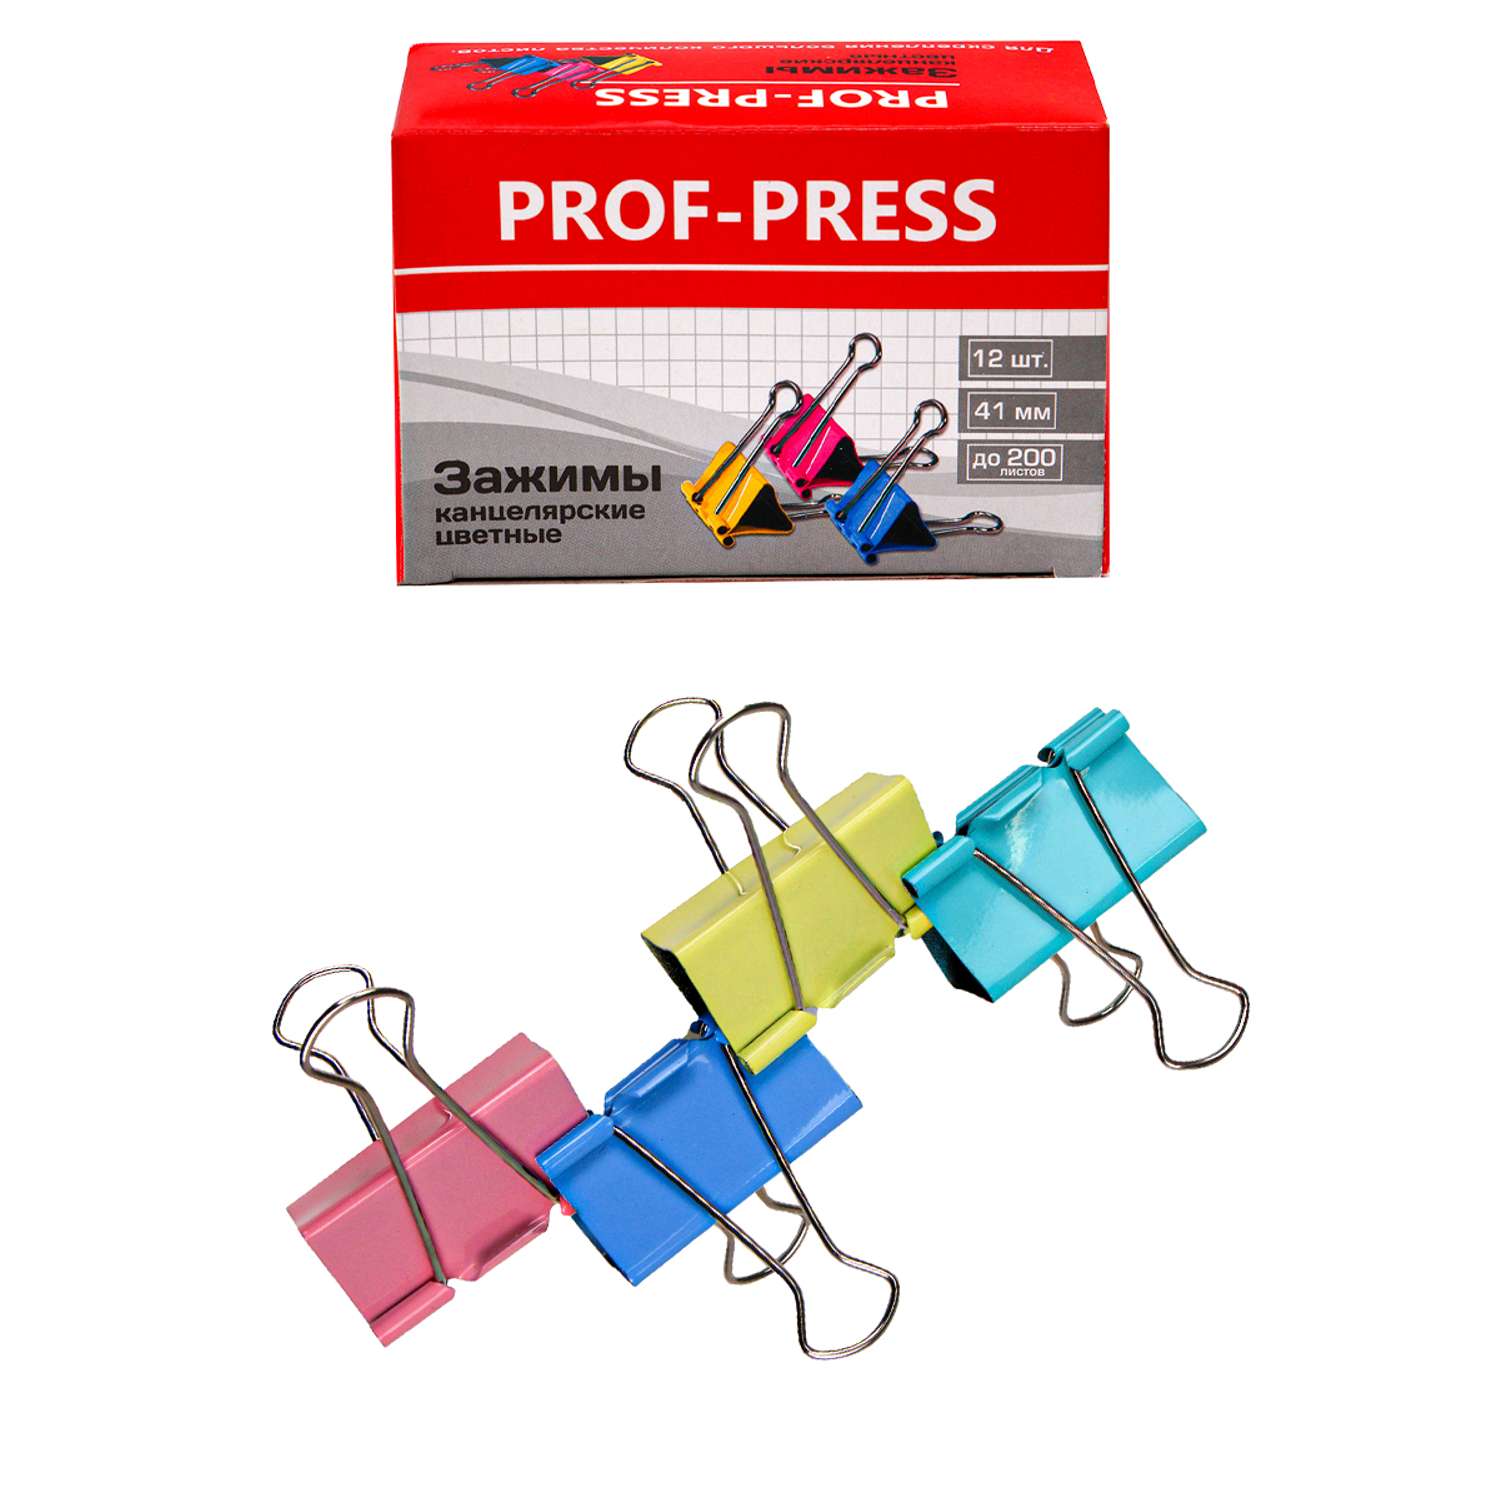 Зажим для бумаг Prof-Press цветной 41мм 12 шт в коробке - фото 1